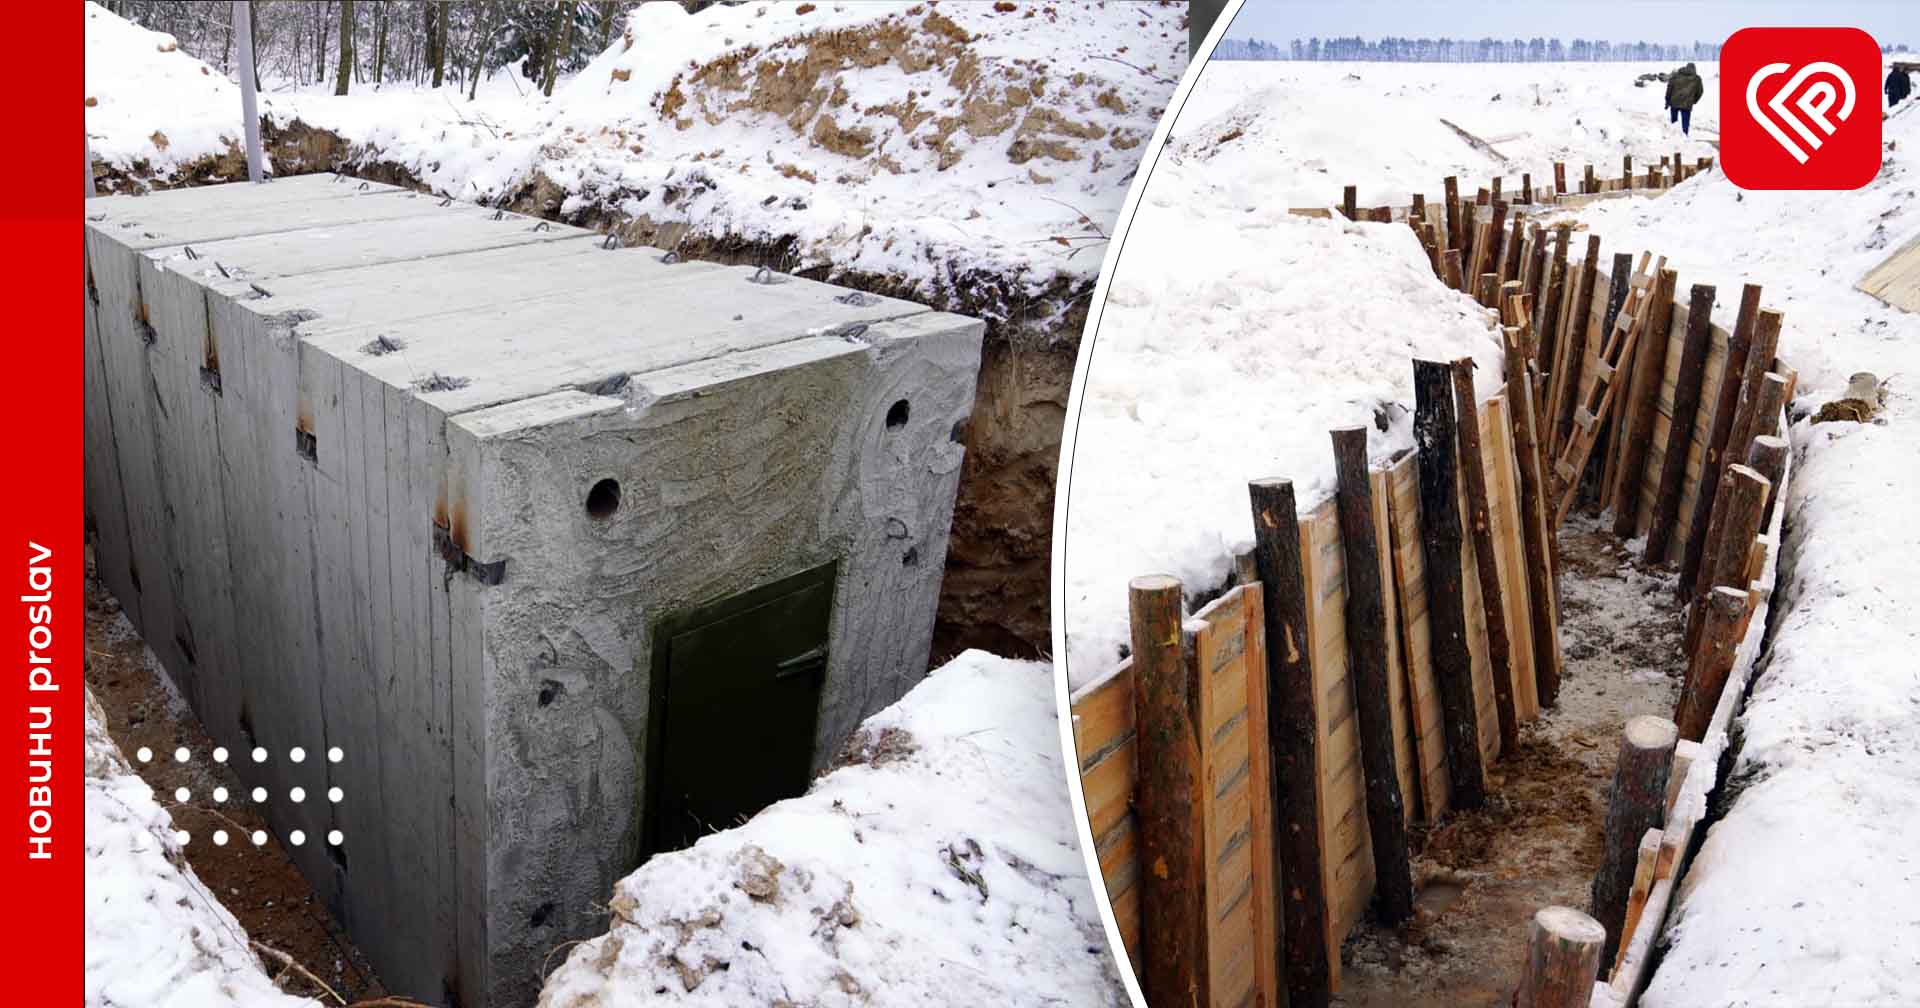 В Україні виділяють майже 800 млн грн для будівництва фортифікаційних укріплень – Денис Шмигаль